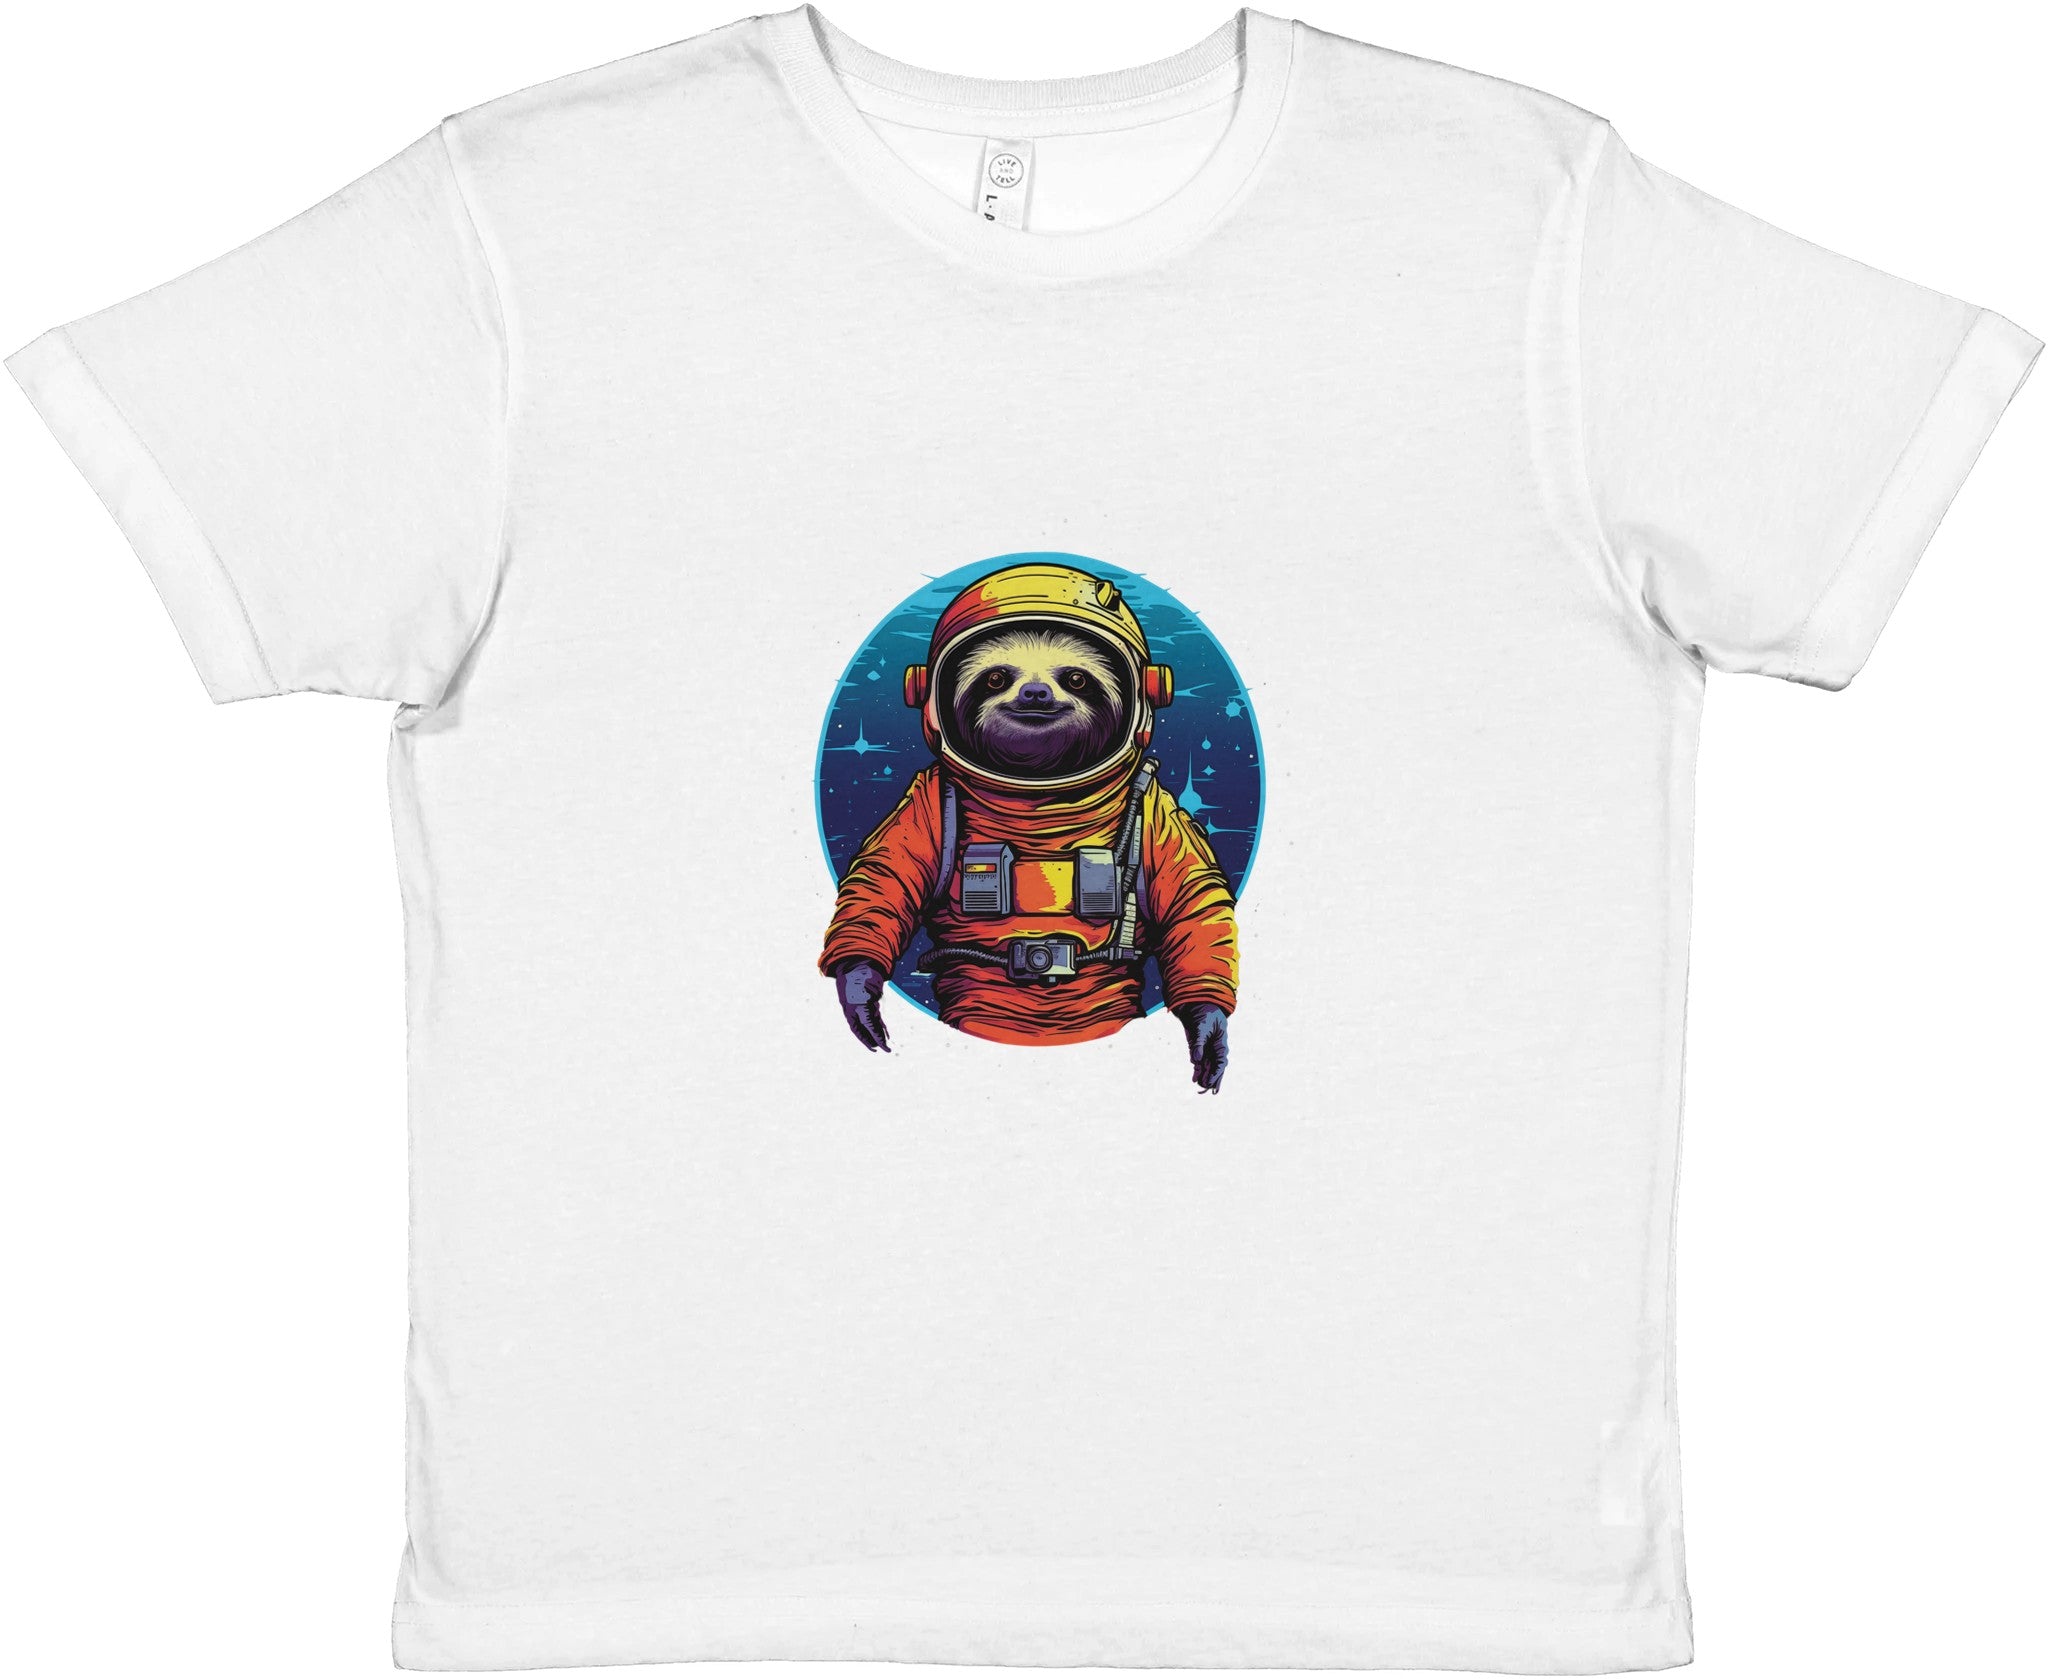 Interstellar Relaxation Kids Crewneck T-shirt - Optimalprint